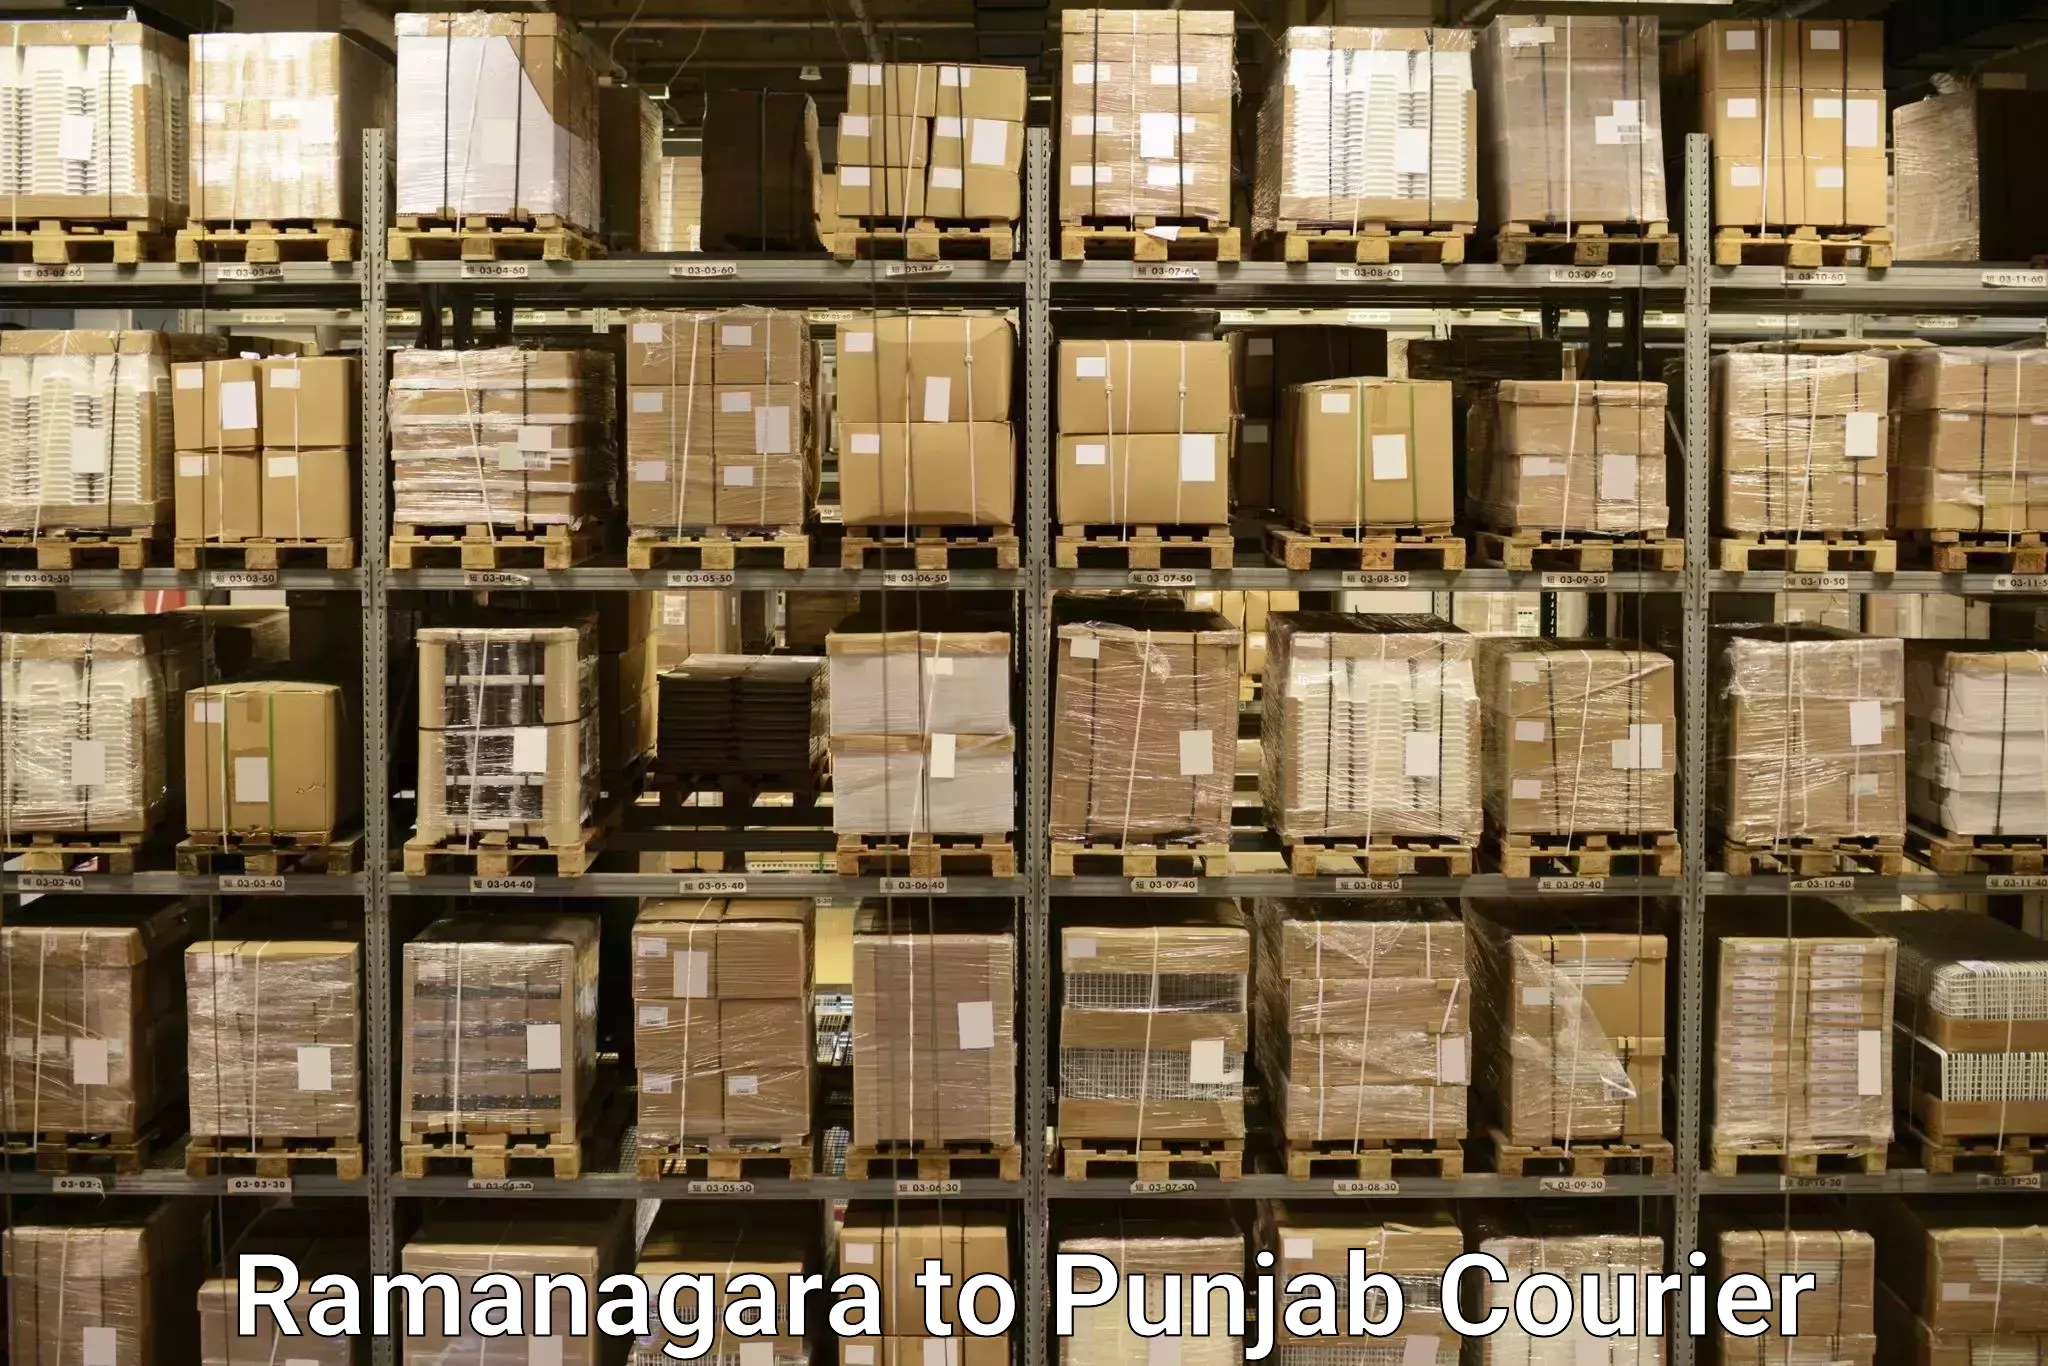 Digital baggage courier Ramanagara to Punjab